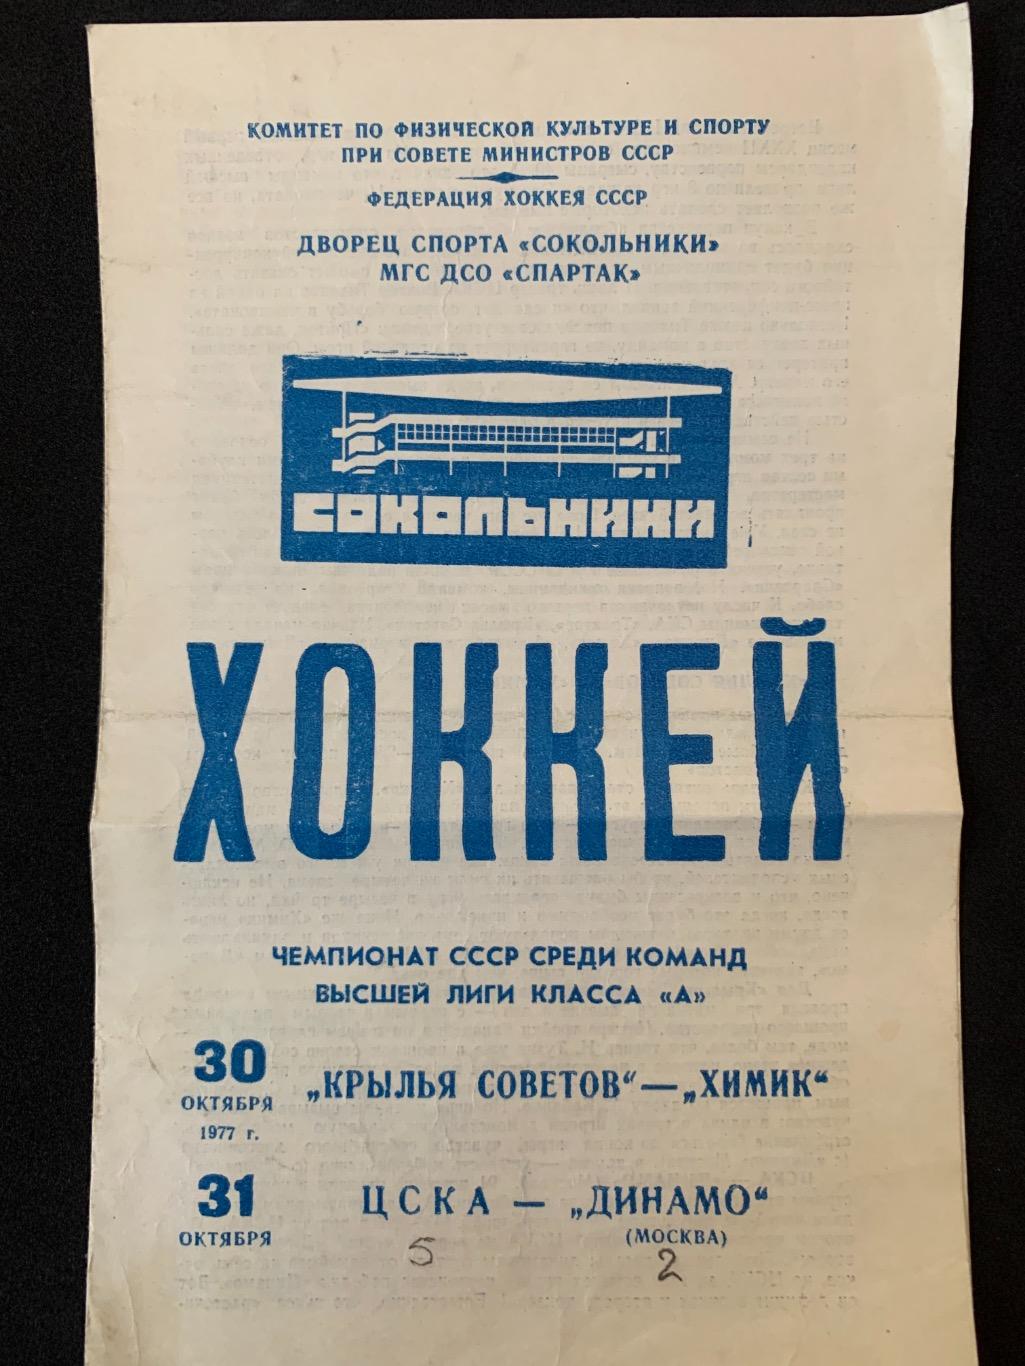 Крылья Советов - Химик / ЦСКА - Динамо 30-31.10.1977